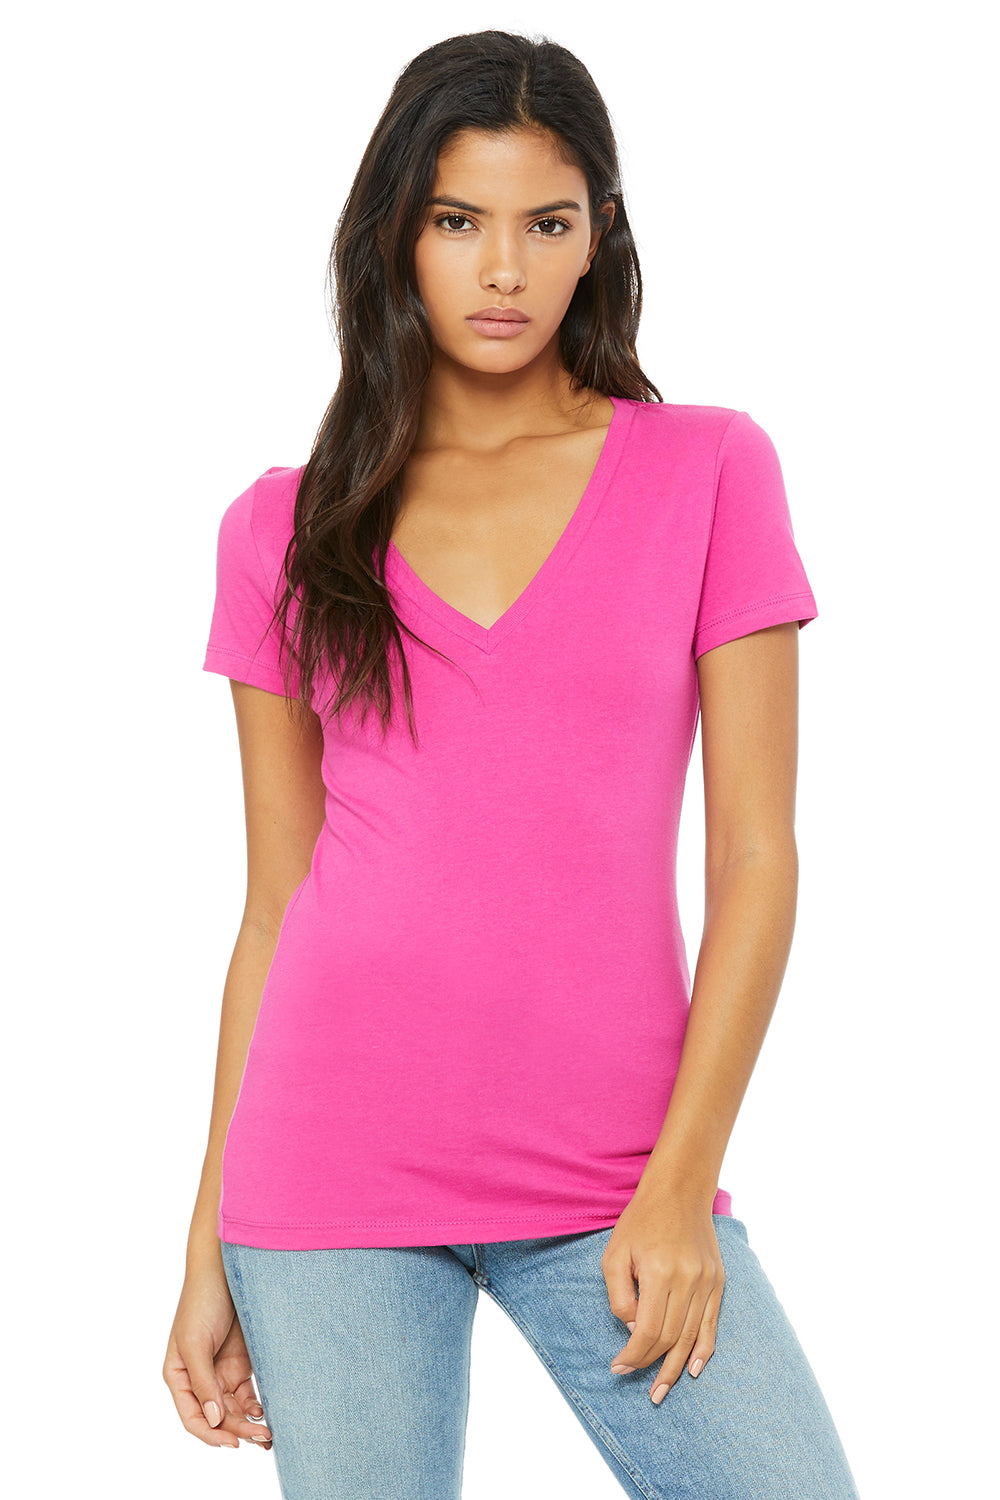 Bella + Canvas B6035 Womens Jersey Short Sleeve Deep V-Neck T-Shirt Berry Pink Front